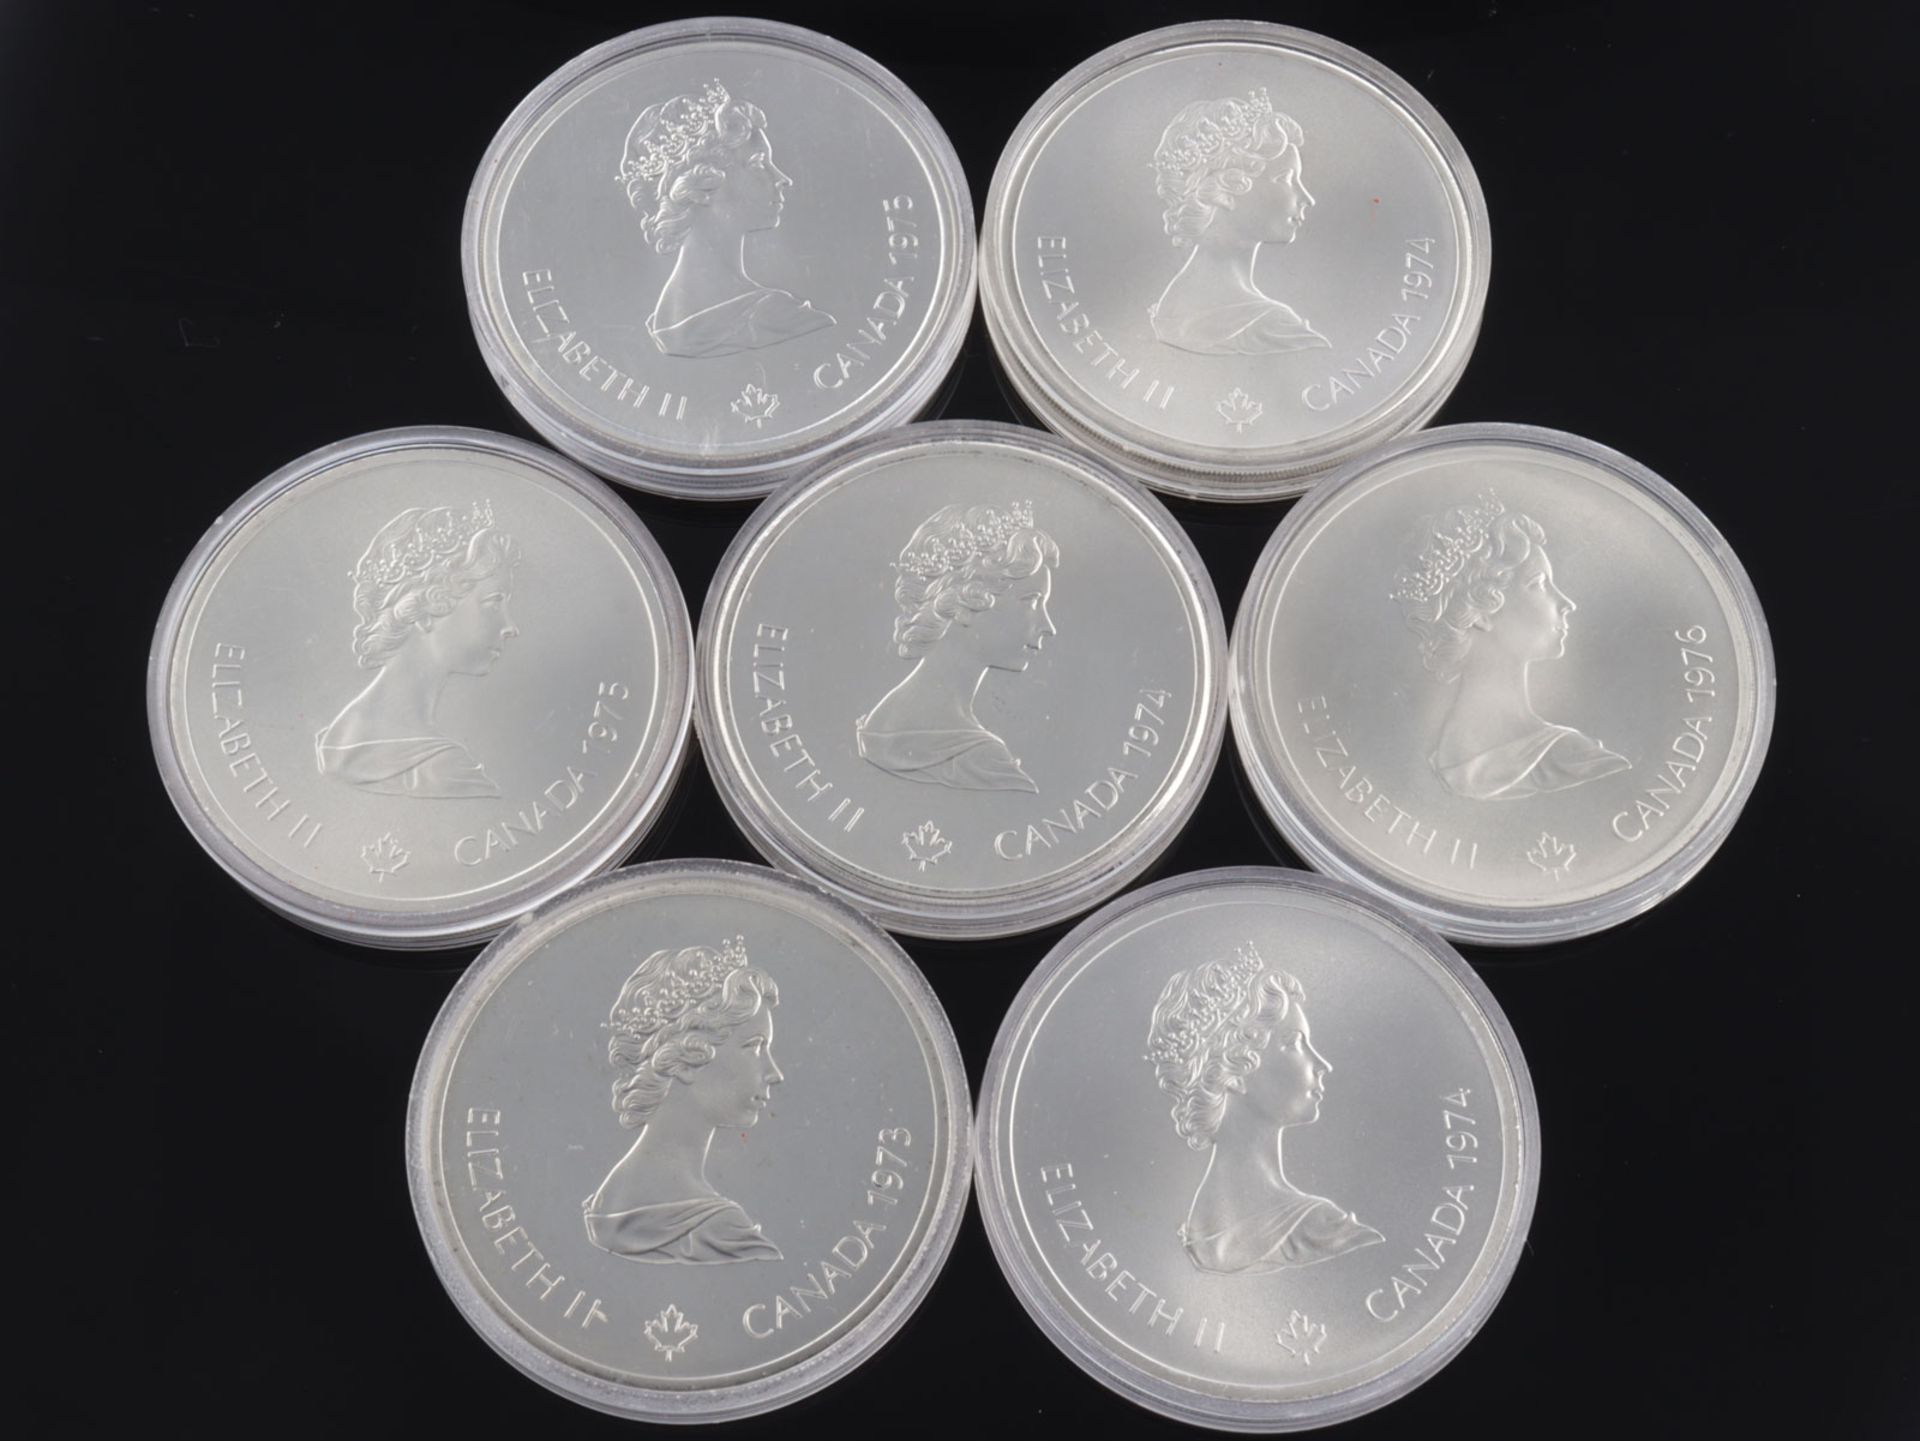 Silbermünzen - Kanada - Image 2 of 2